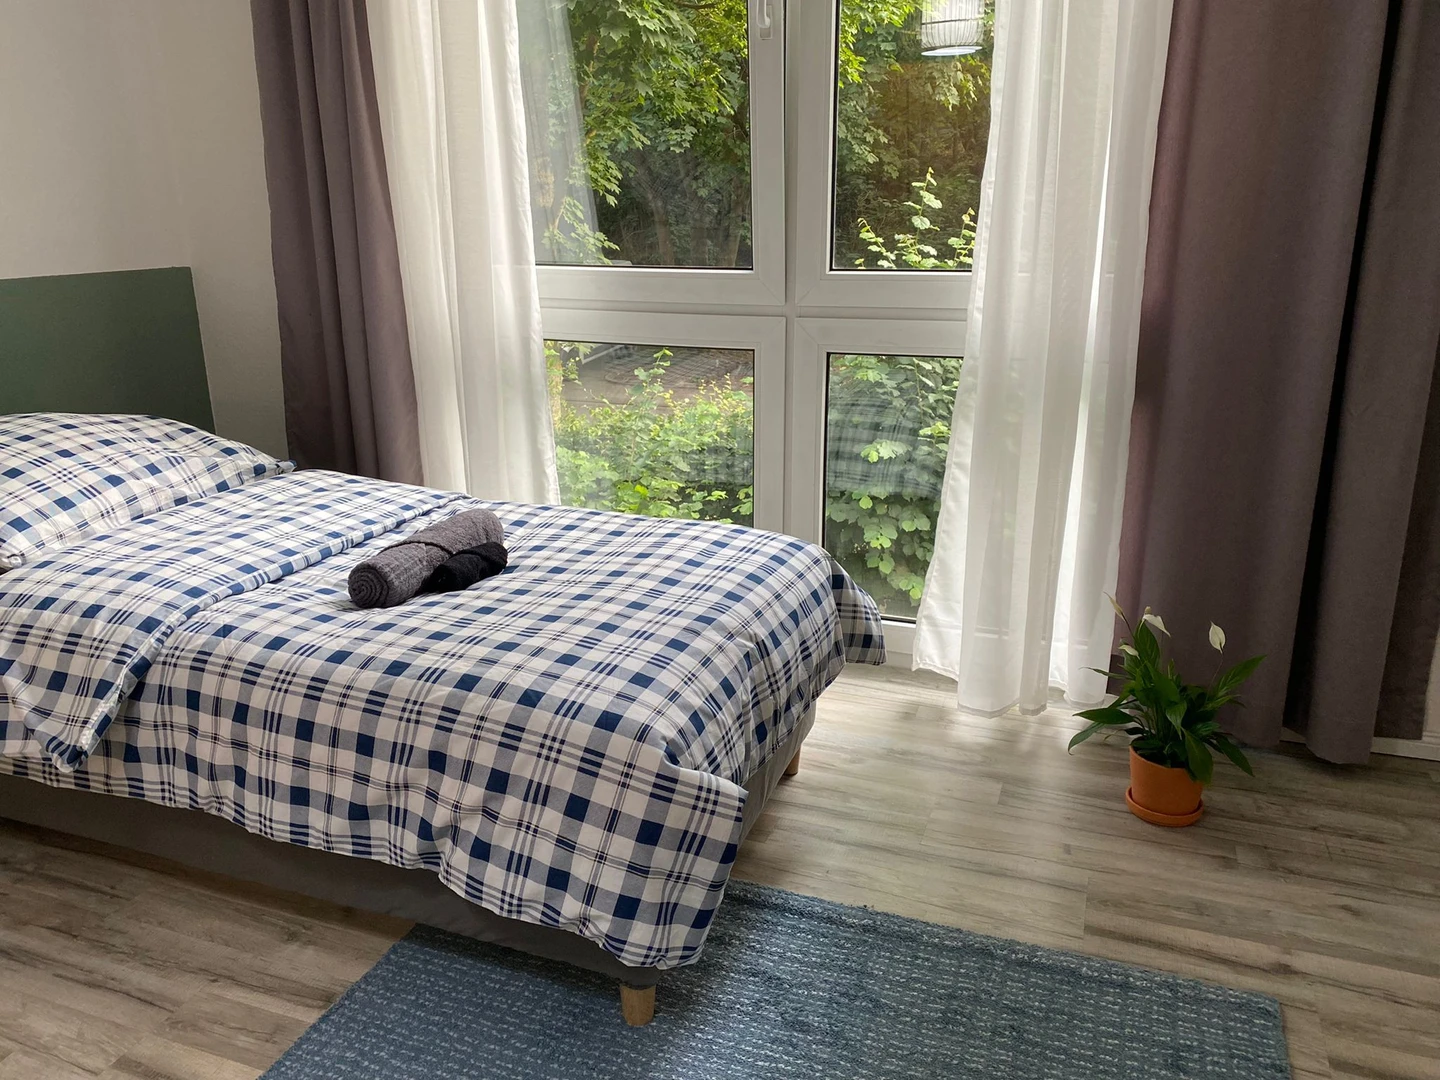 Pokój do wynajęcia z podwójnym łóżkiem w Hanower